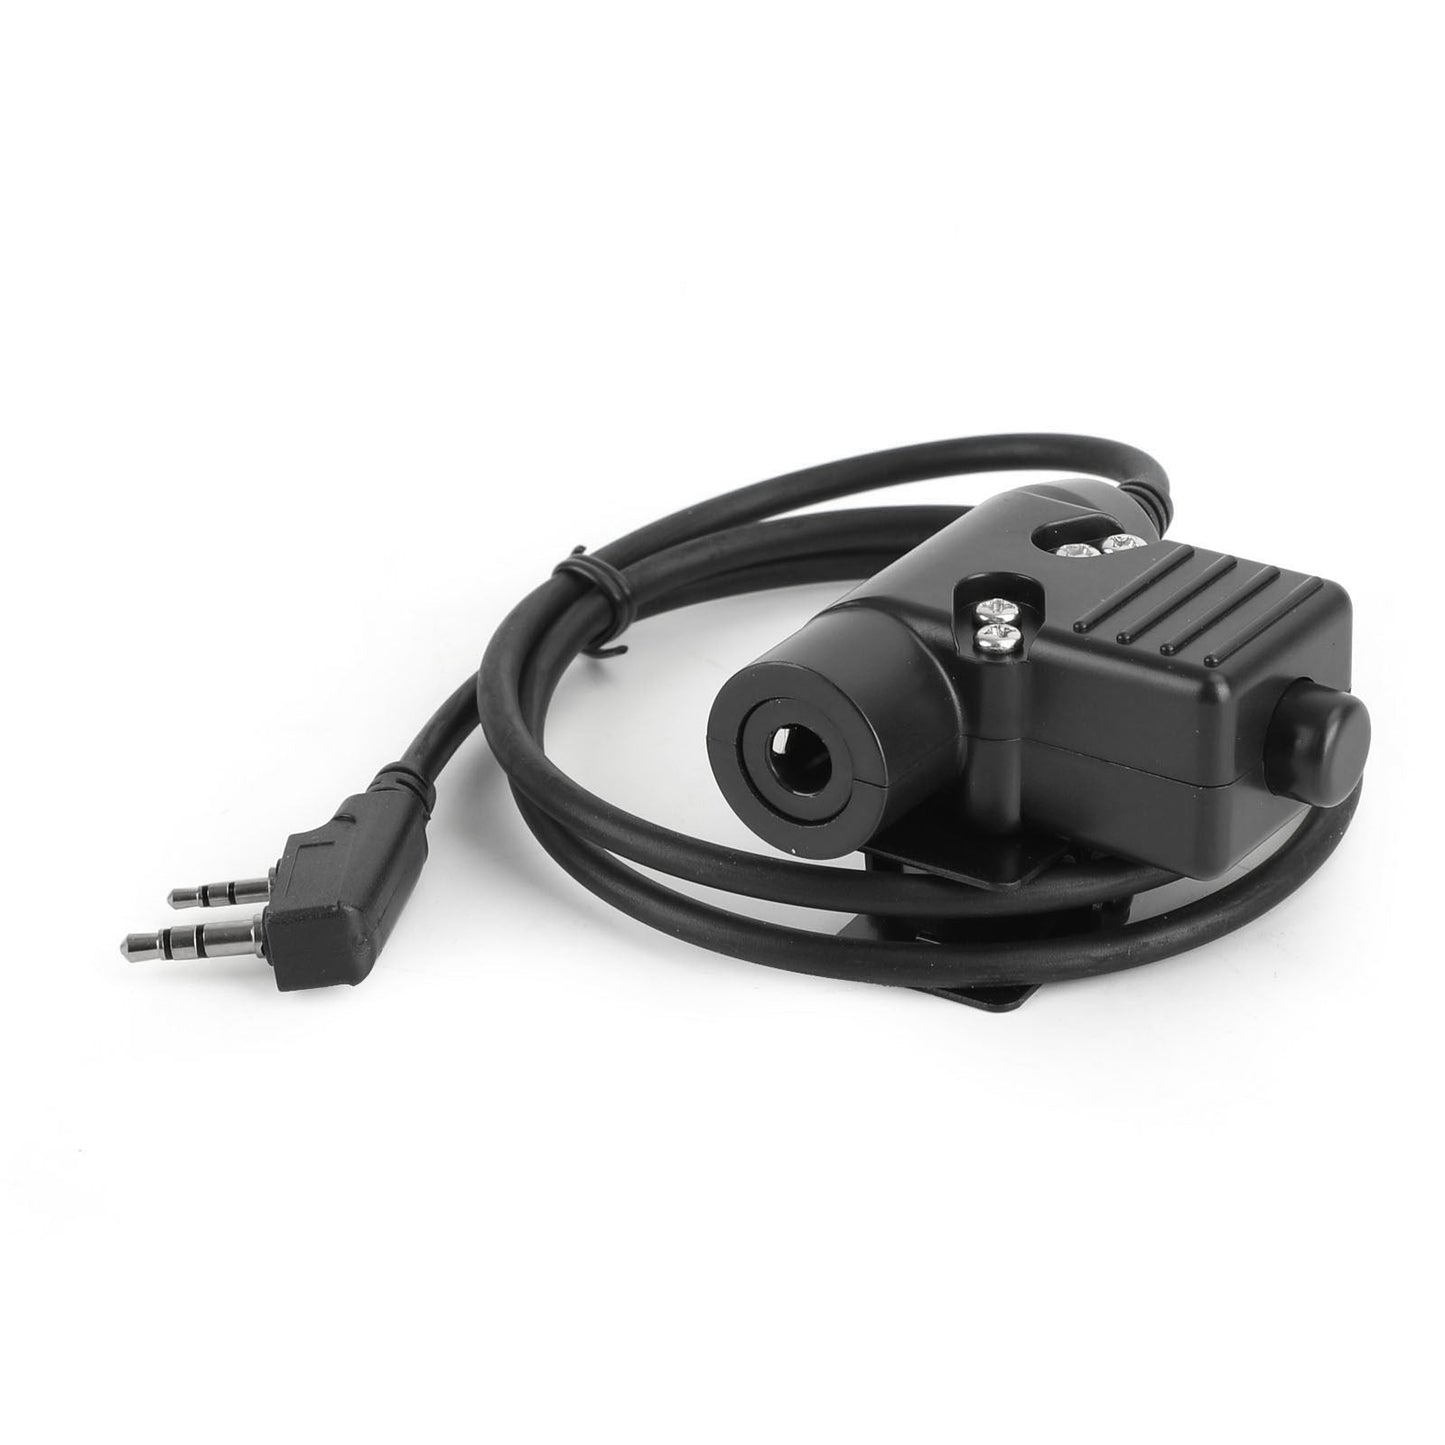 Halsmikrofon-Headset Pasend für Tk3107 TK3207 TK3160 Baofeng UV5R UV-82